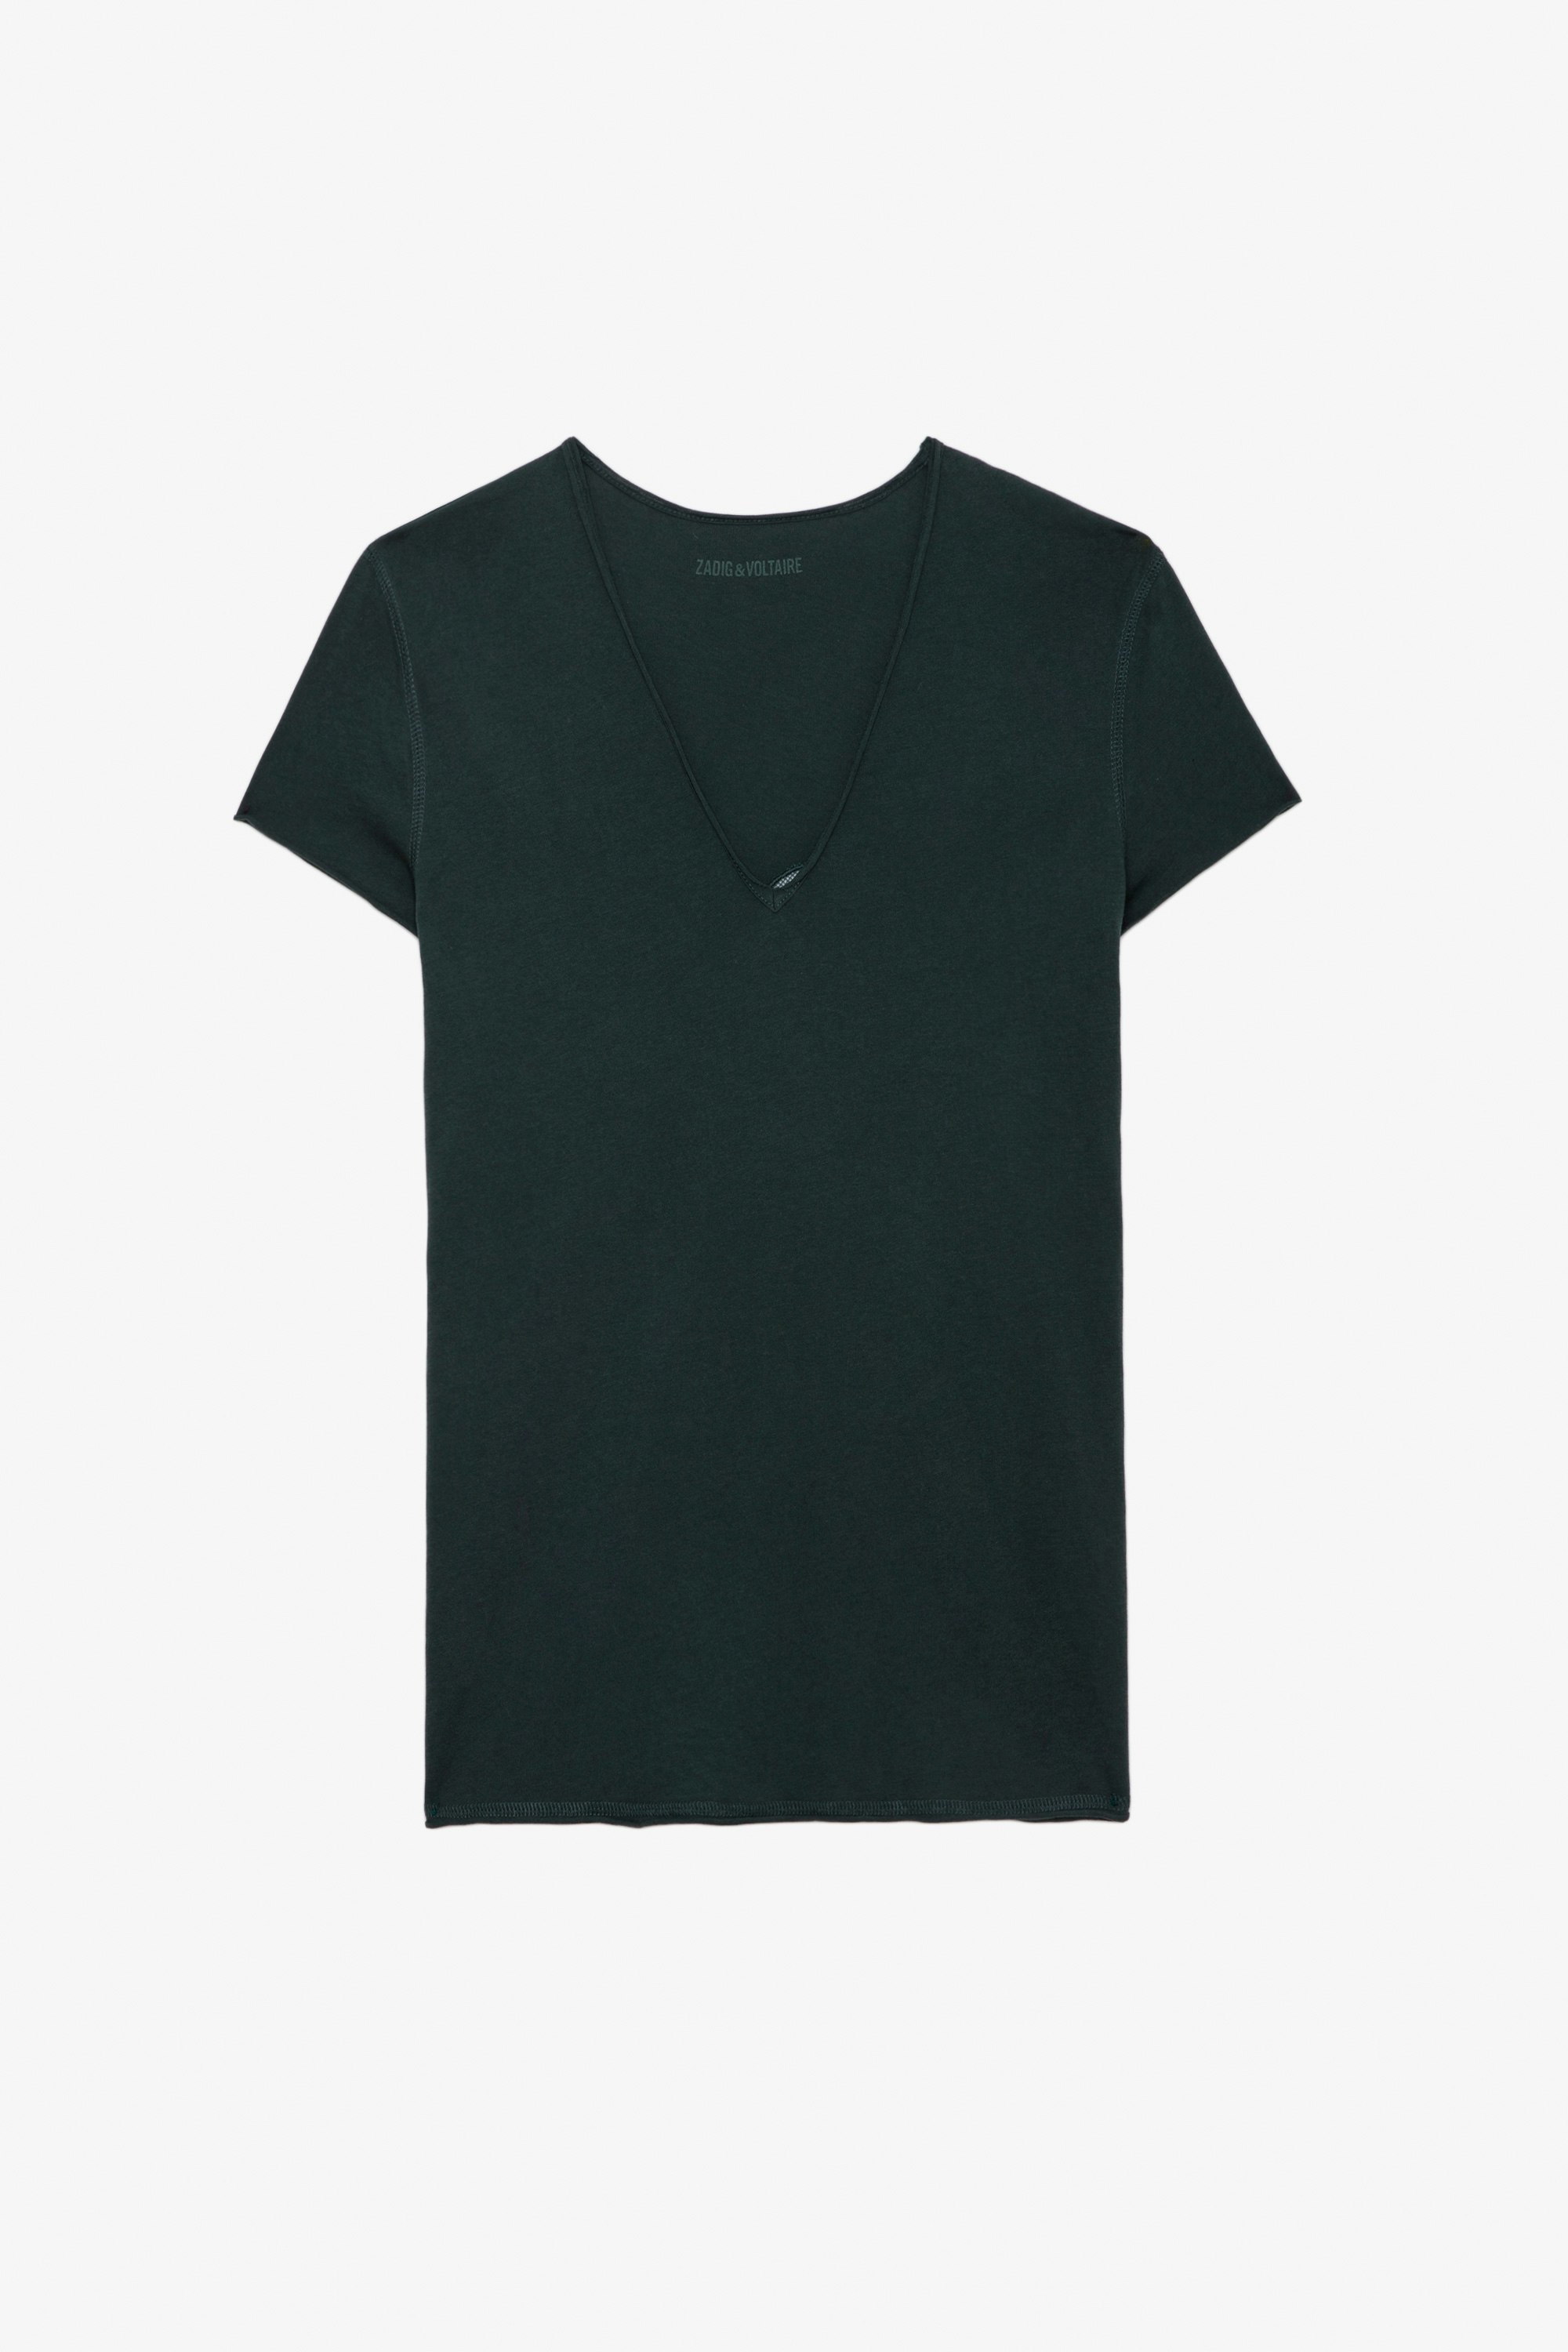 Camiseta Story Fishnet - Camiseta de algodón ecológico en color gris oscuro con mangas cortas y bordado de alas «Peace Love» en la espalda.